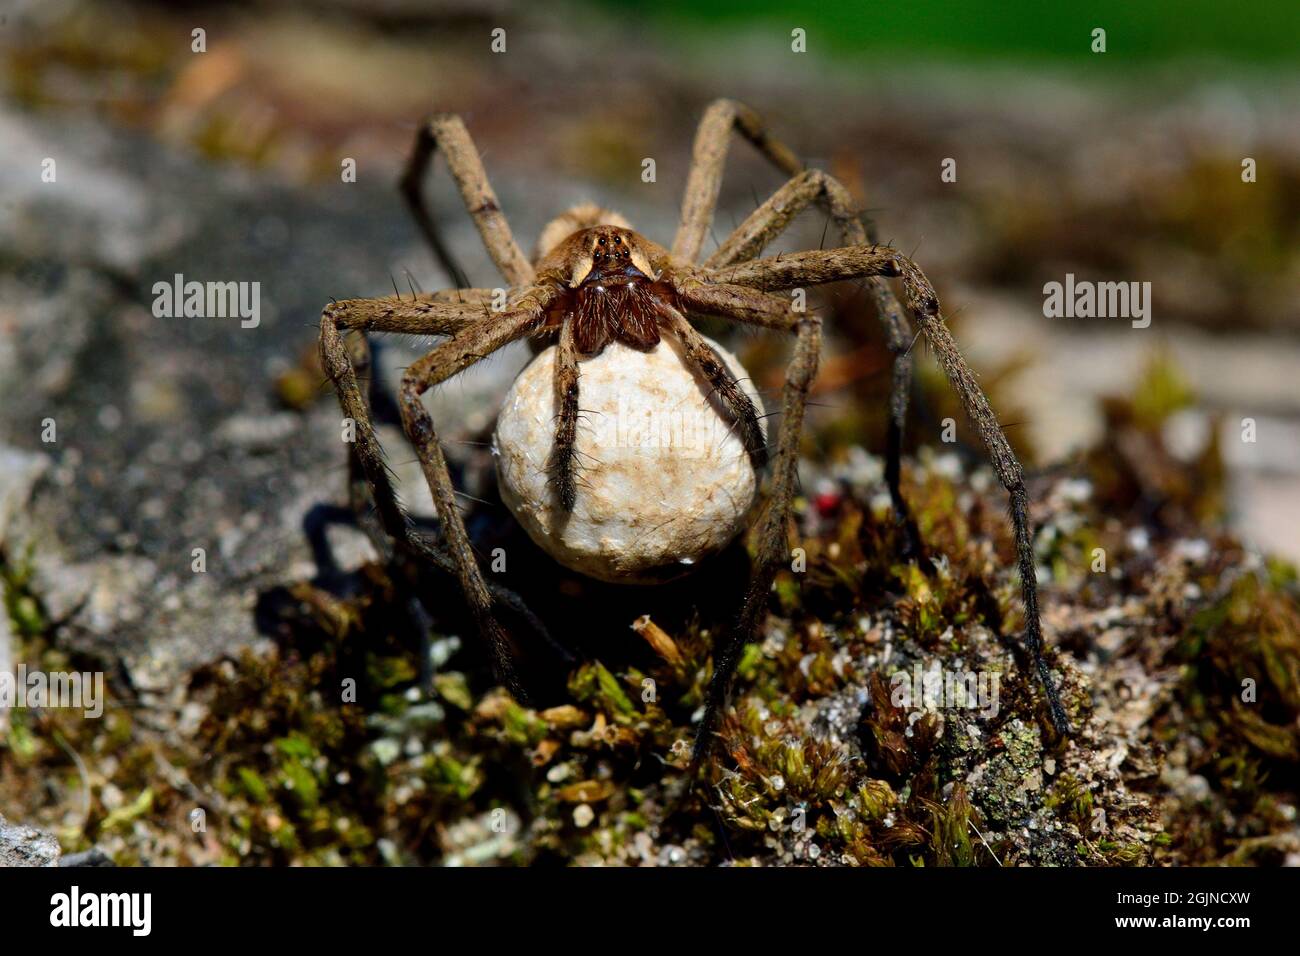 Listspinne, Raubspinne, nursery web spider, Pisaura mirabilis, Spinne des Jahres 2002, mit Ei-Kokon, with egg-cocoon Stock Photo